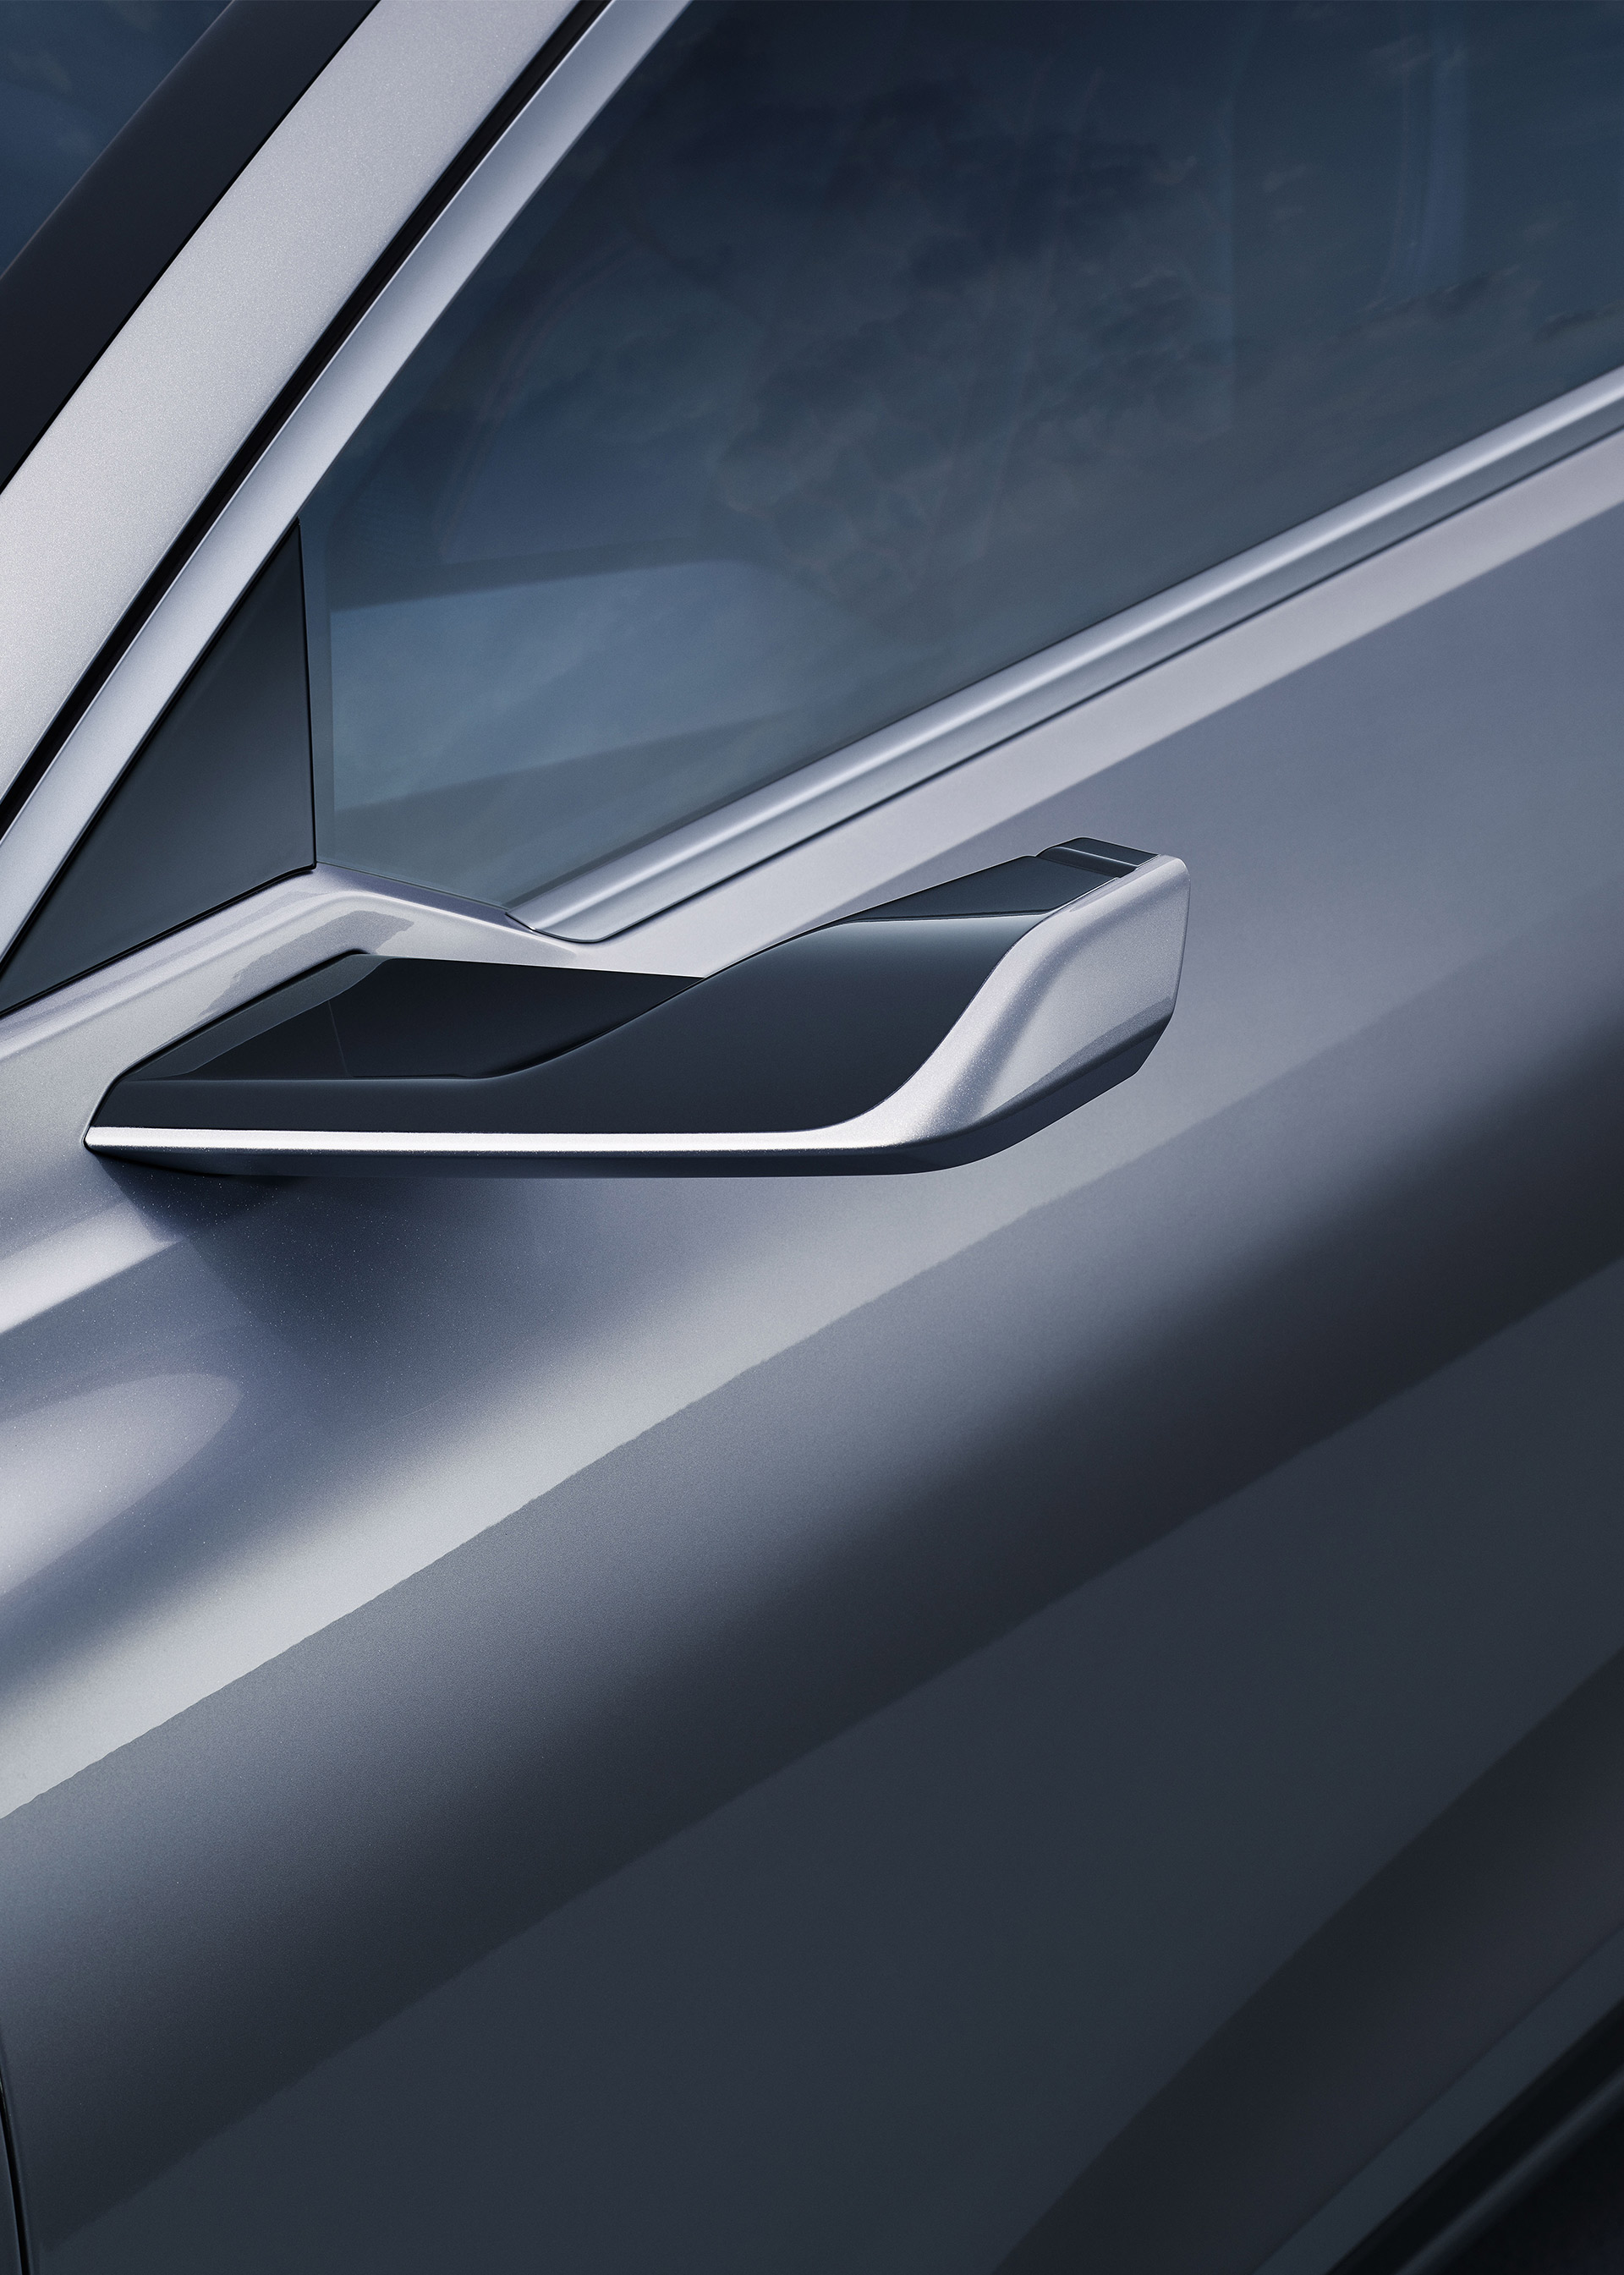 De virtuele buitenspiegels van de A6 e-tron concept zitten op de A-stijlen. Deze sierlijke cameraspiegels dragen bij aan de aerodynamische efficiëntie.